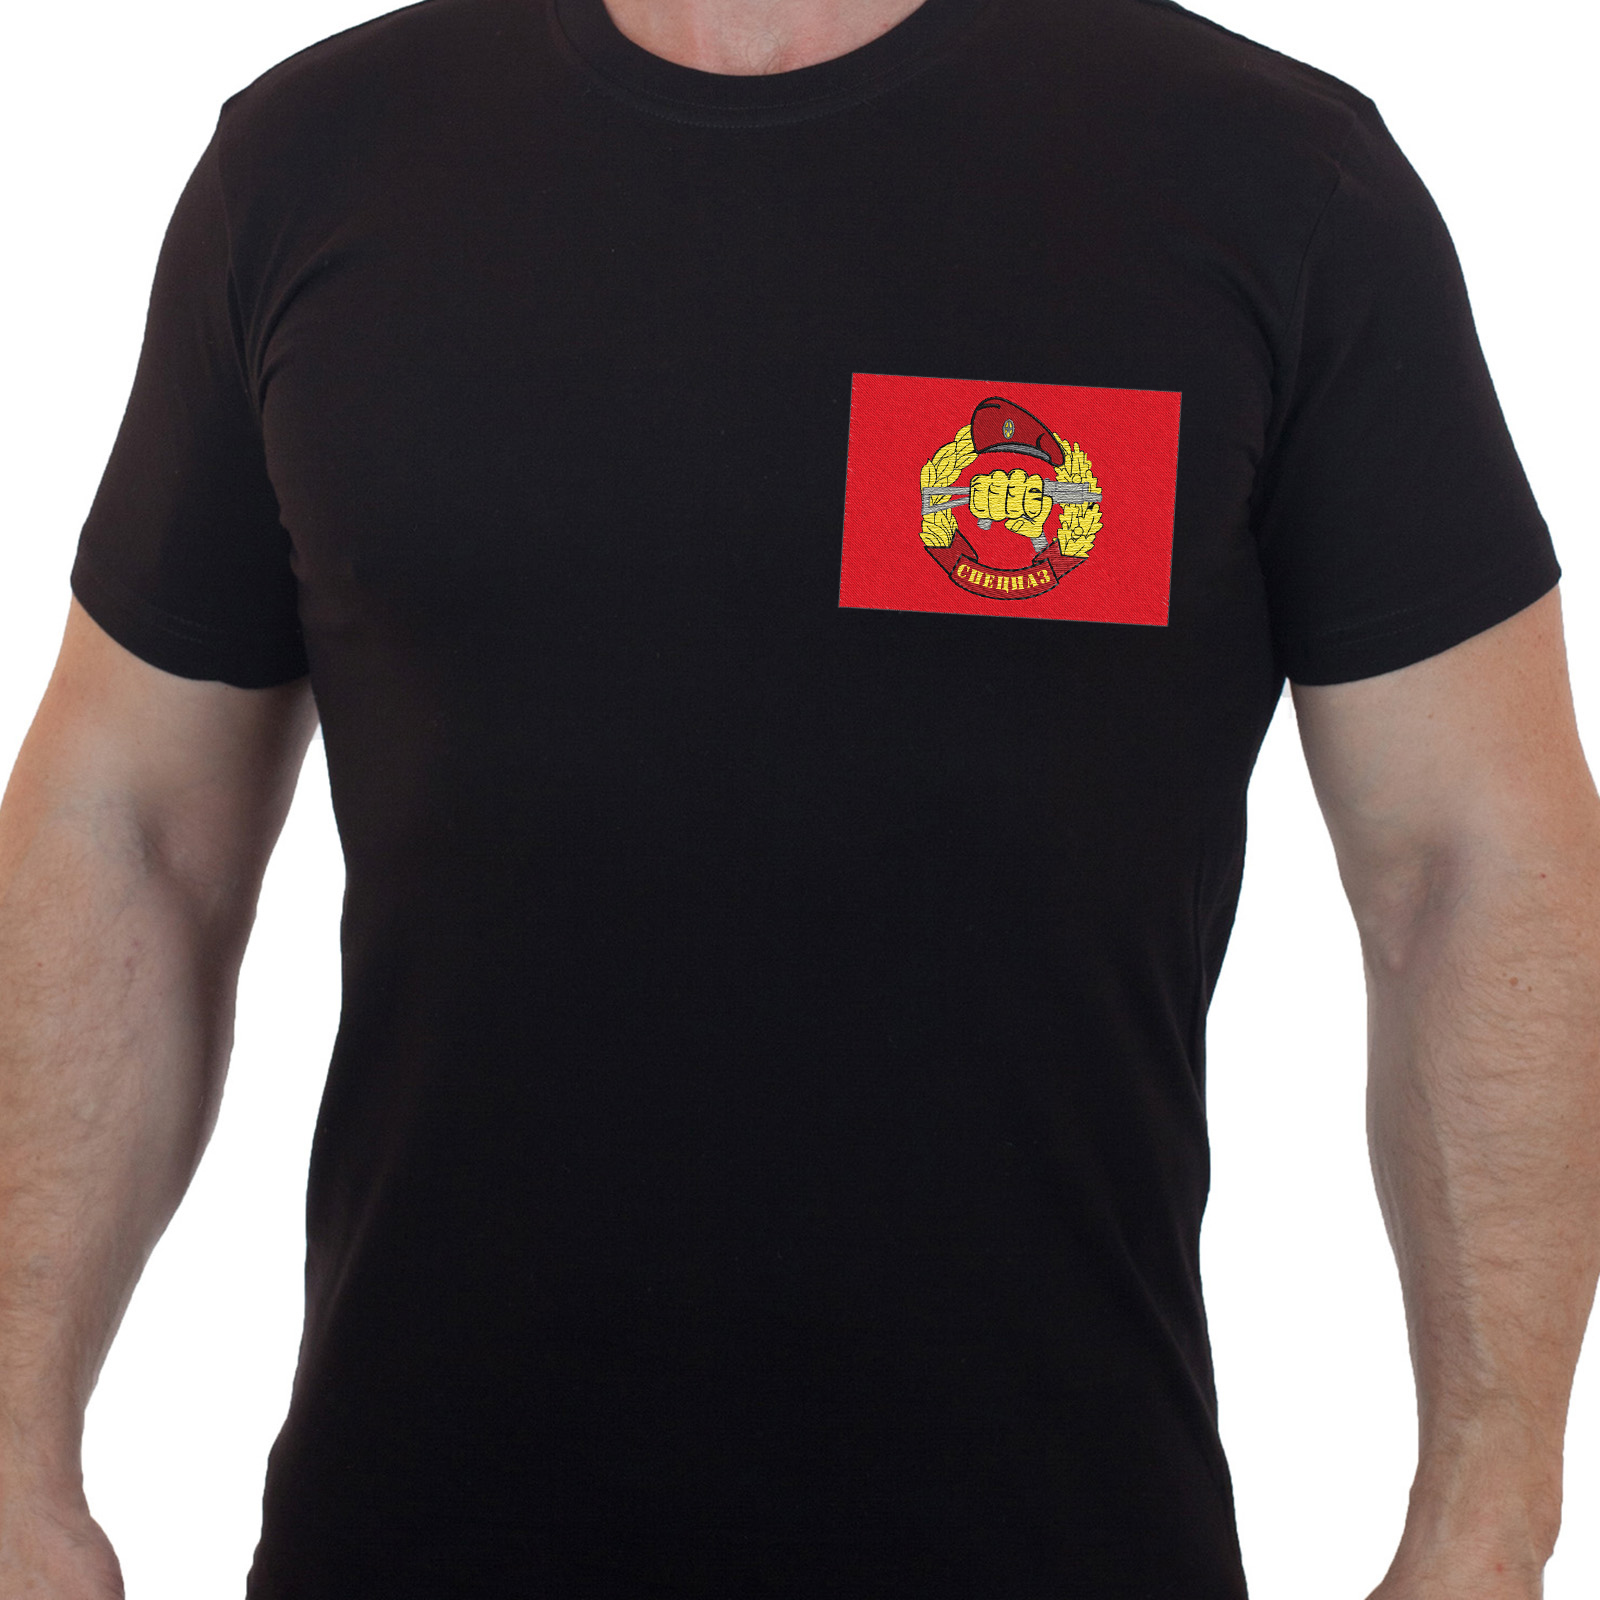 Купить футболку мужскую с вышивкой СПЕЦНАЗ по экономичной цене